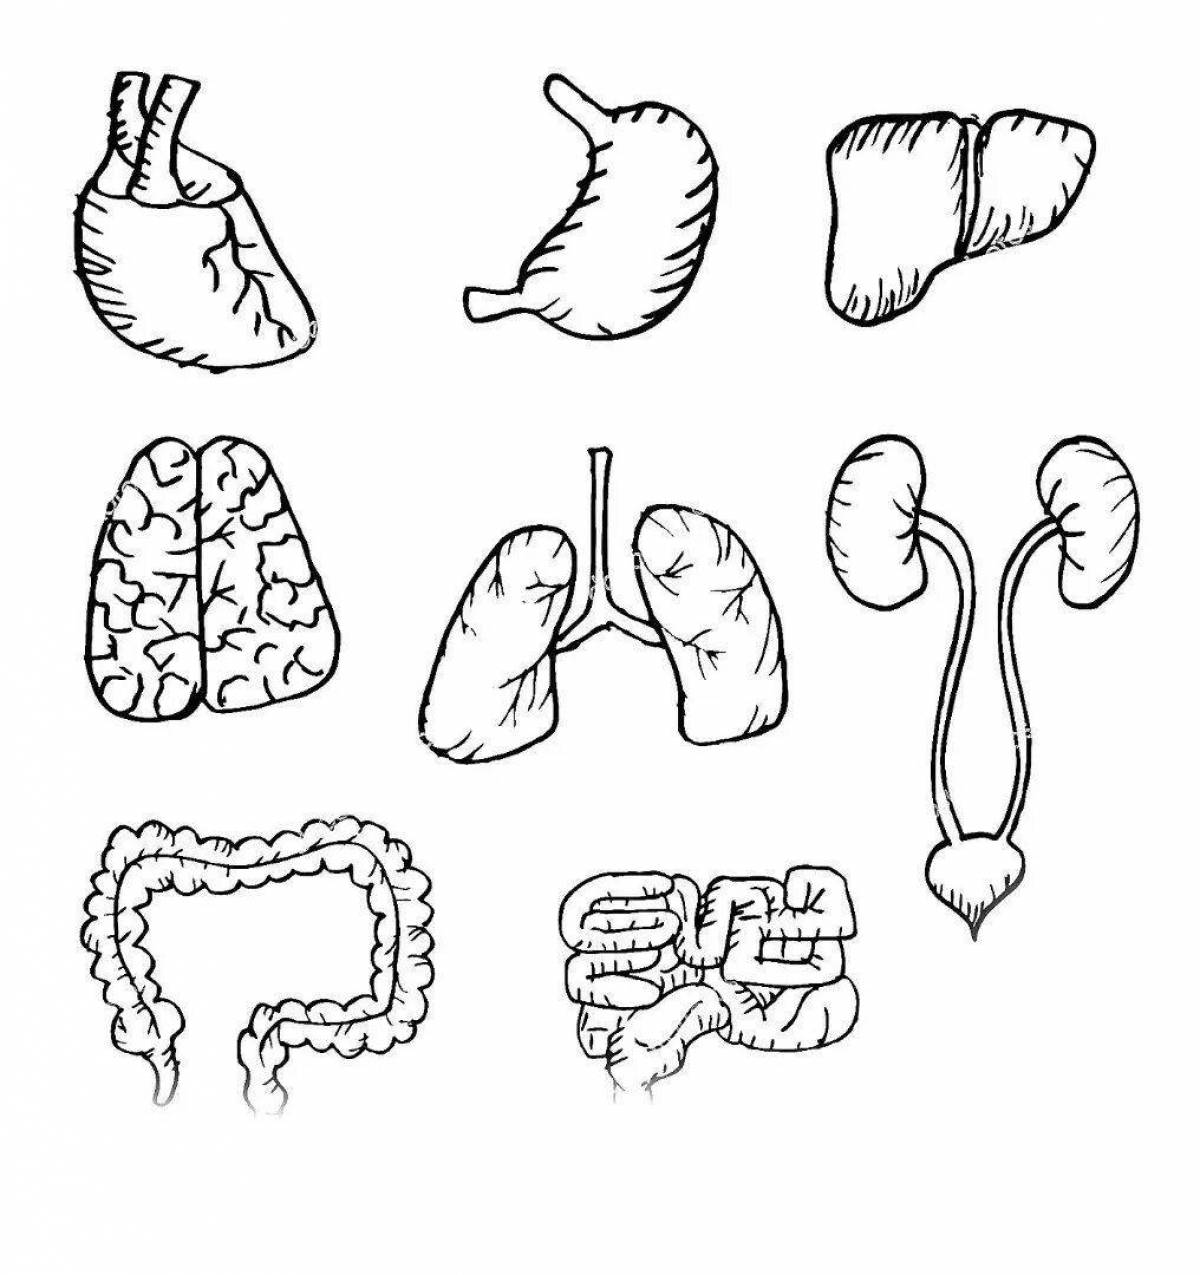 Human internal organs for children #20